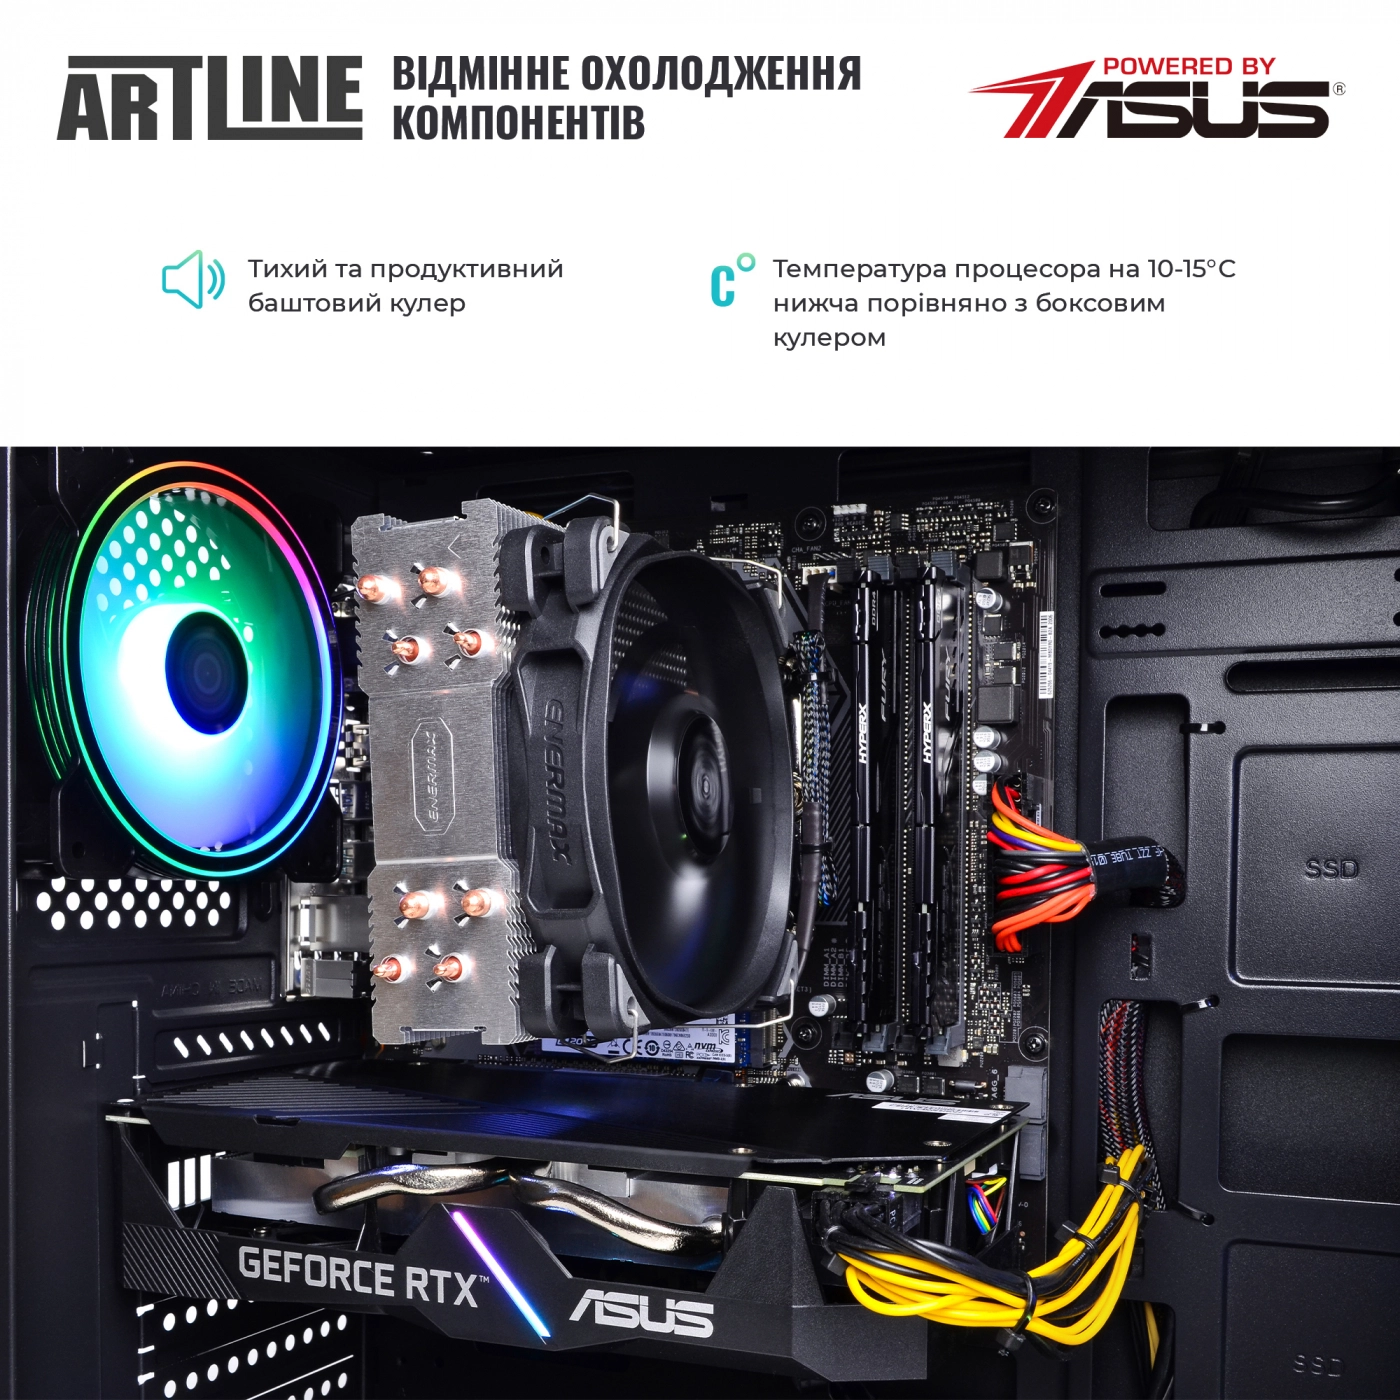 Купить Компьютер ARTLINE Gaming X63v18 - фото 5